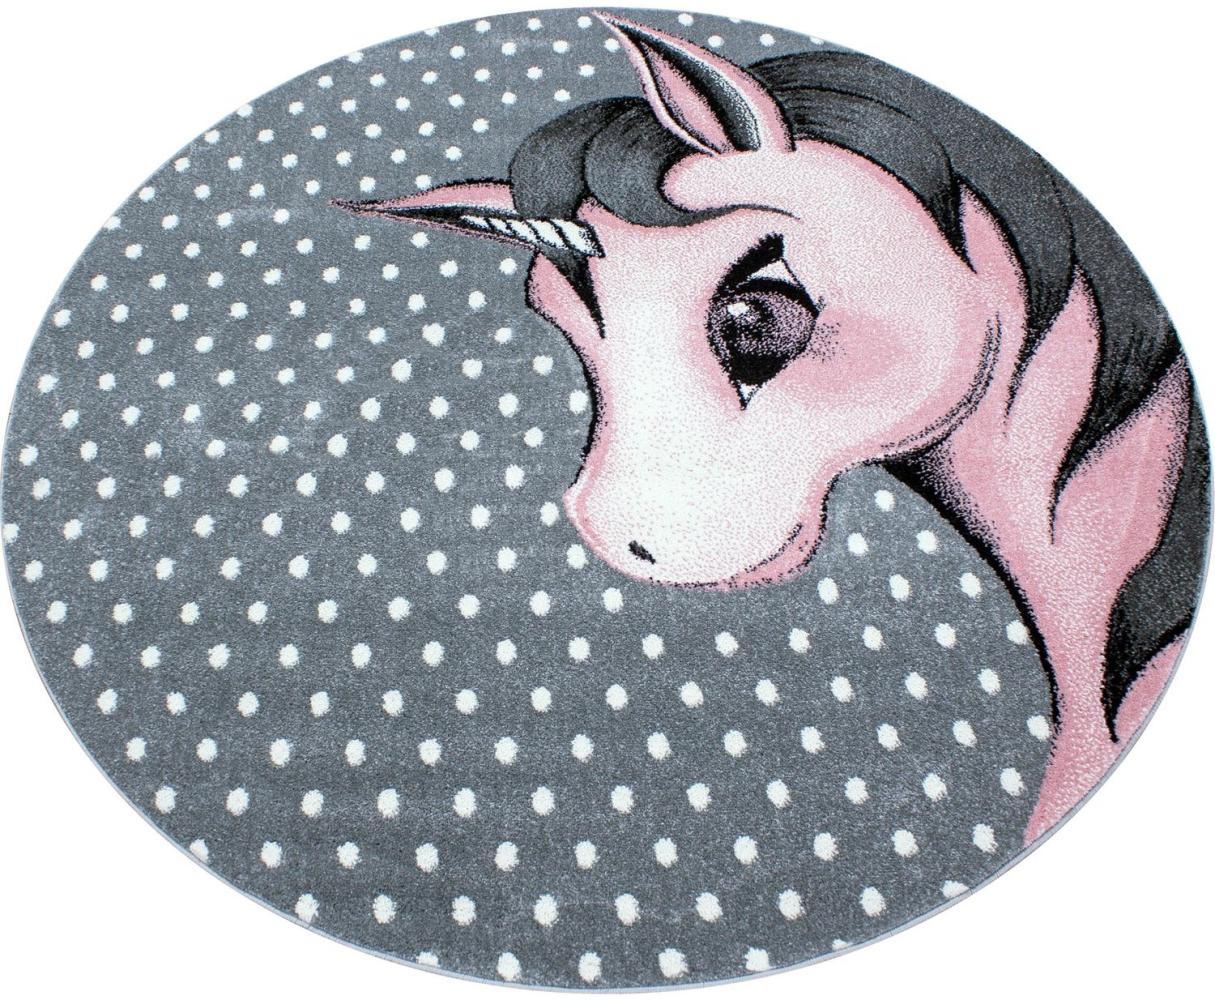 Kinder Teppich Kikki rund - 160 cm Durchmesser - Pink Bild 1